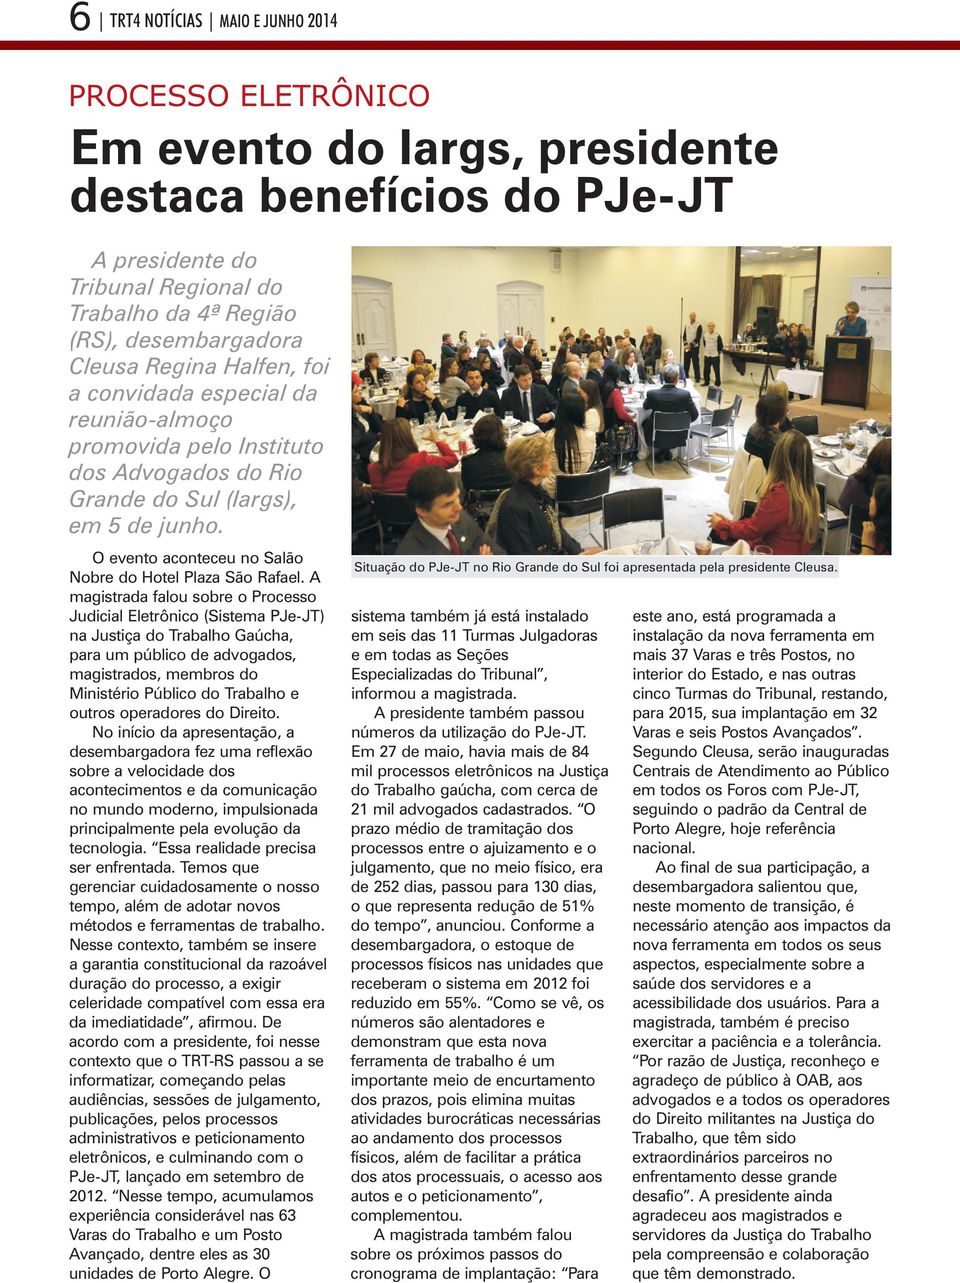 O evento aconteceu no Salão Nobre do Hotel Plaza São Rafael. A Situação do PJe-JT no Rio Grande do Sul foi apresentada pela presidente Cleusa.